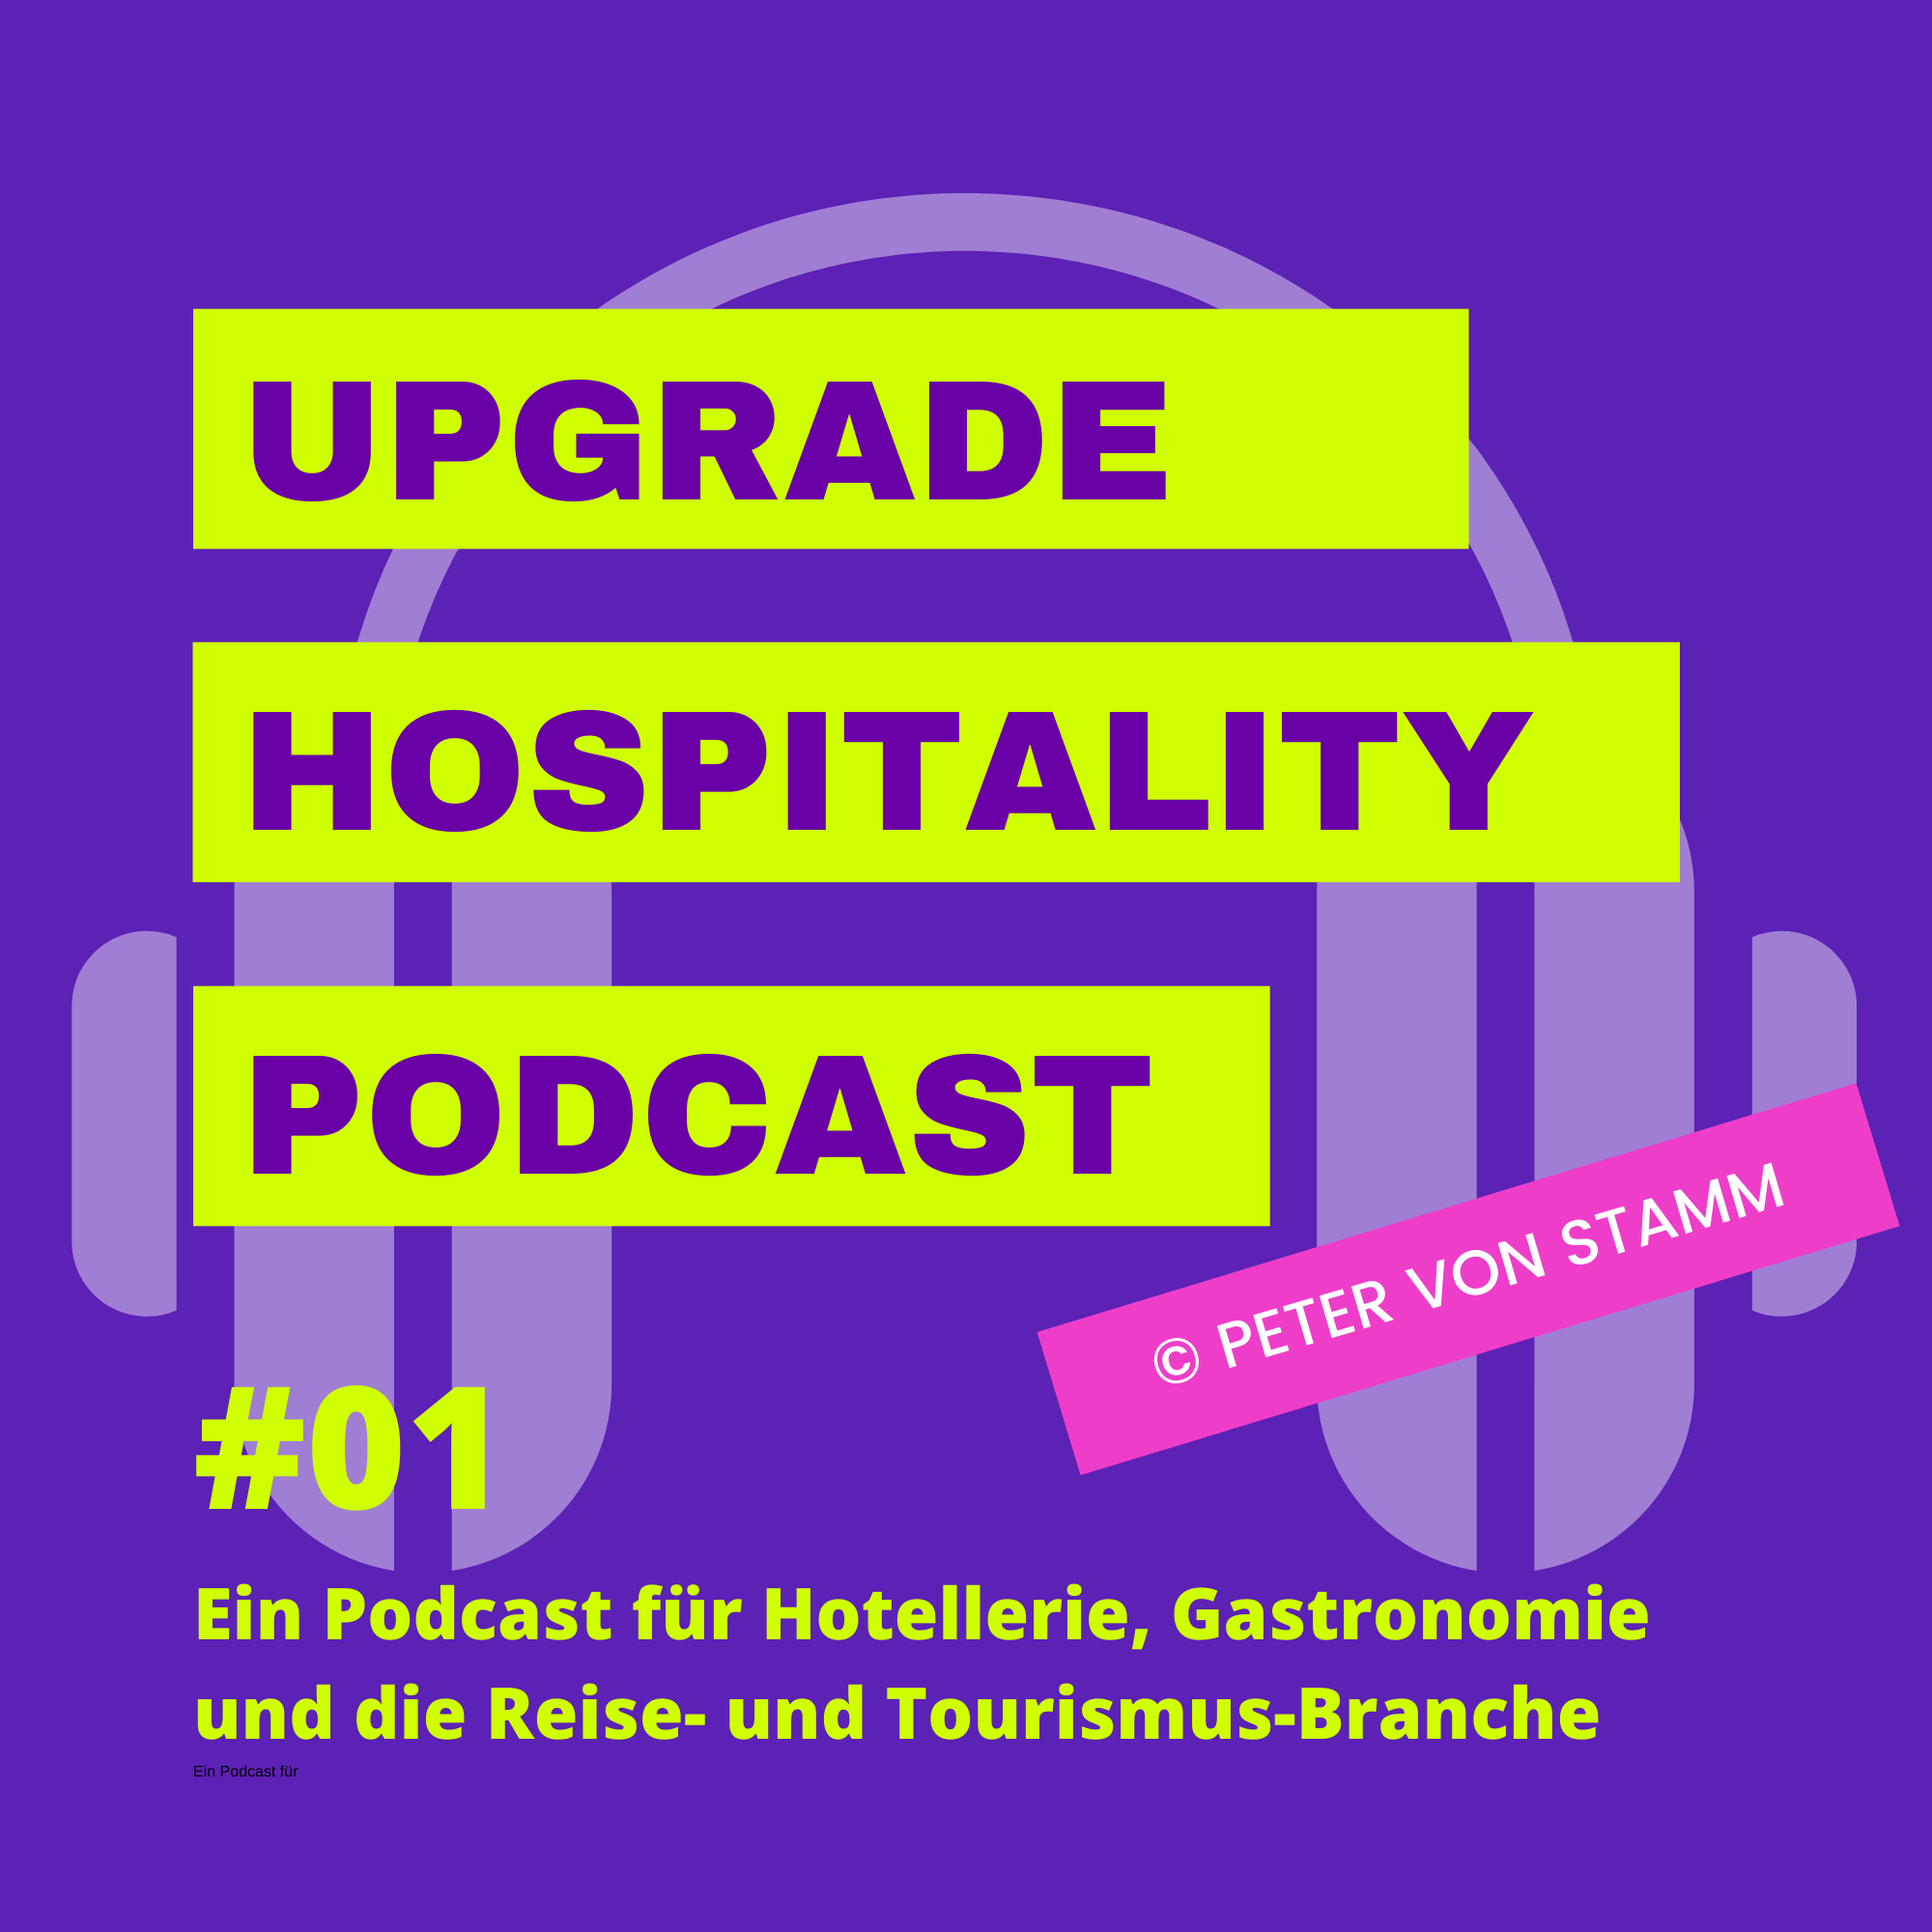 A highlight from #34 Podcast von der Saarschleife aus Buchnas Landhotel Saarschleife im Saarland